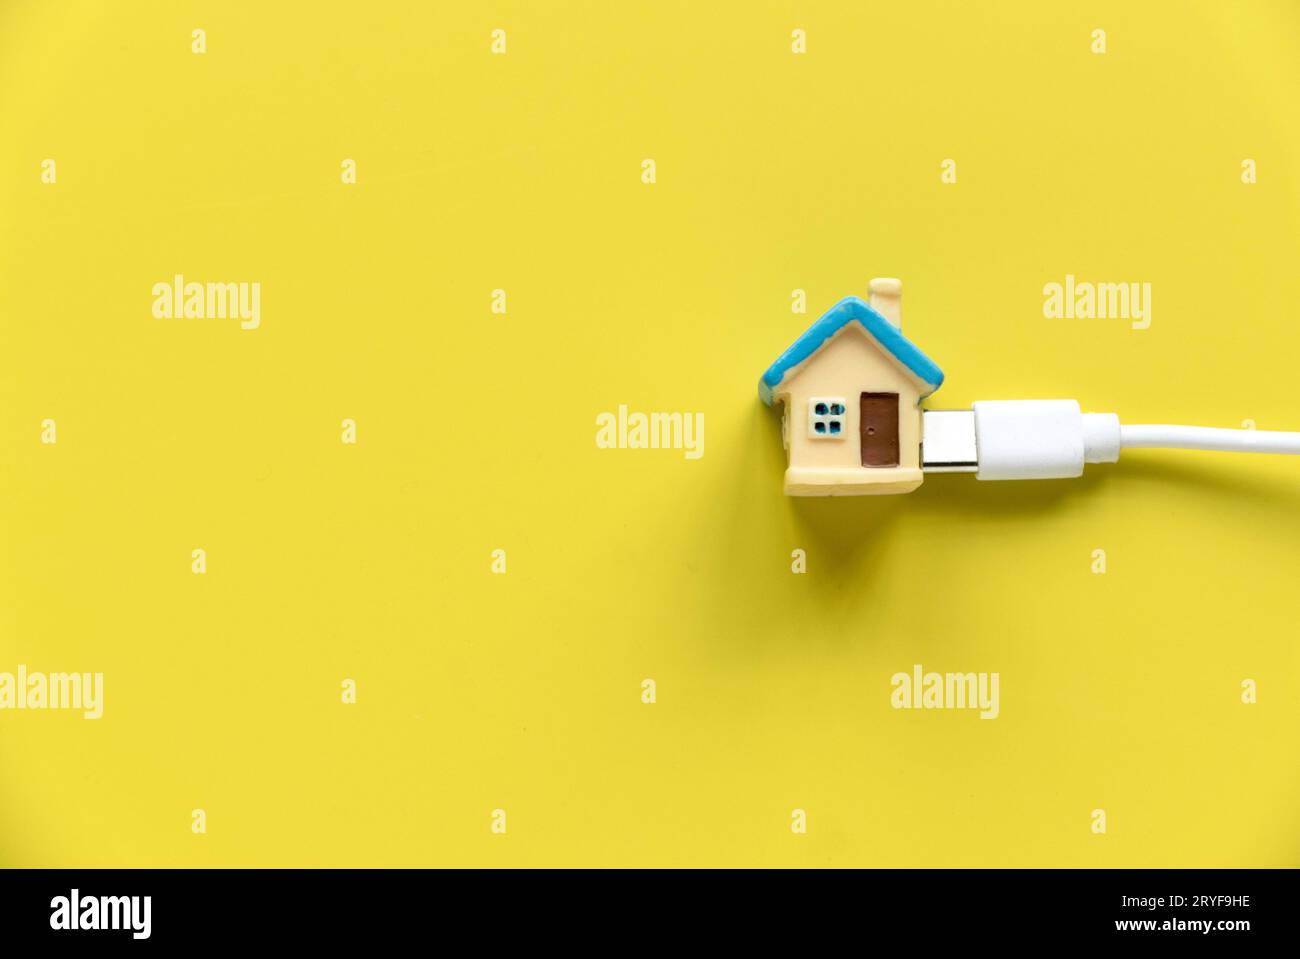 Haus- und Versorgungskonzept. Miniatur-Gehäuse an einem weißen Kabel über einem gelben Backgorund befestigt Stockfoto